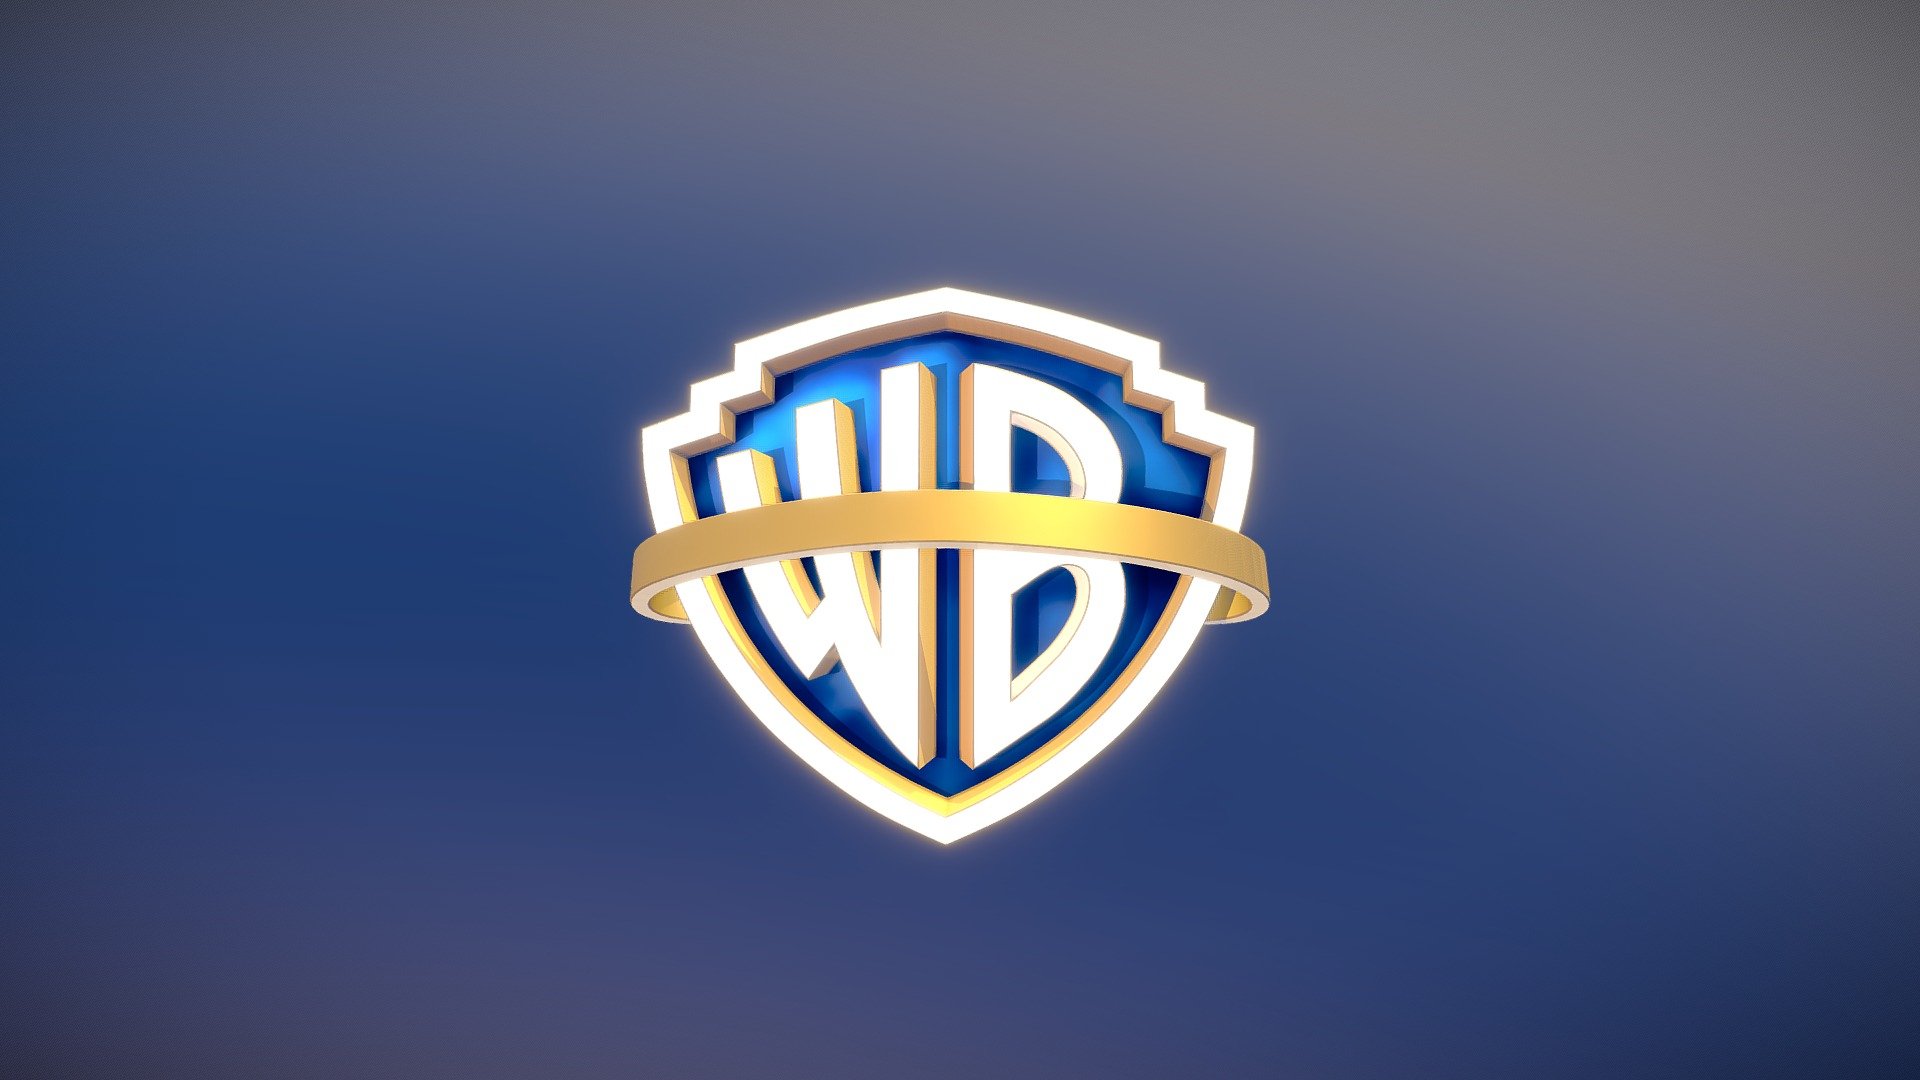 Warner Bros Pictures Logo